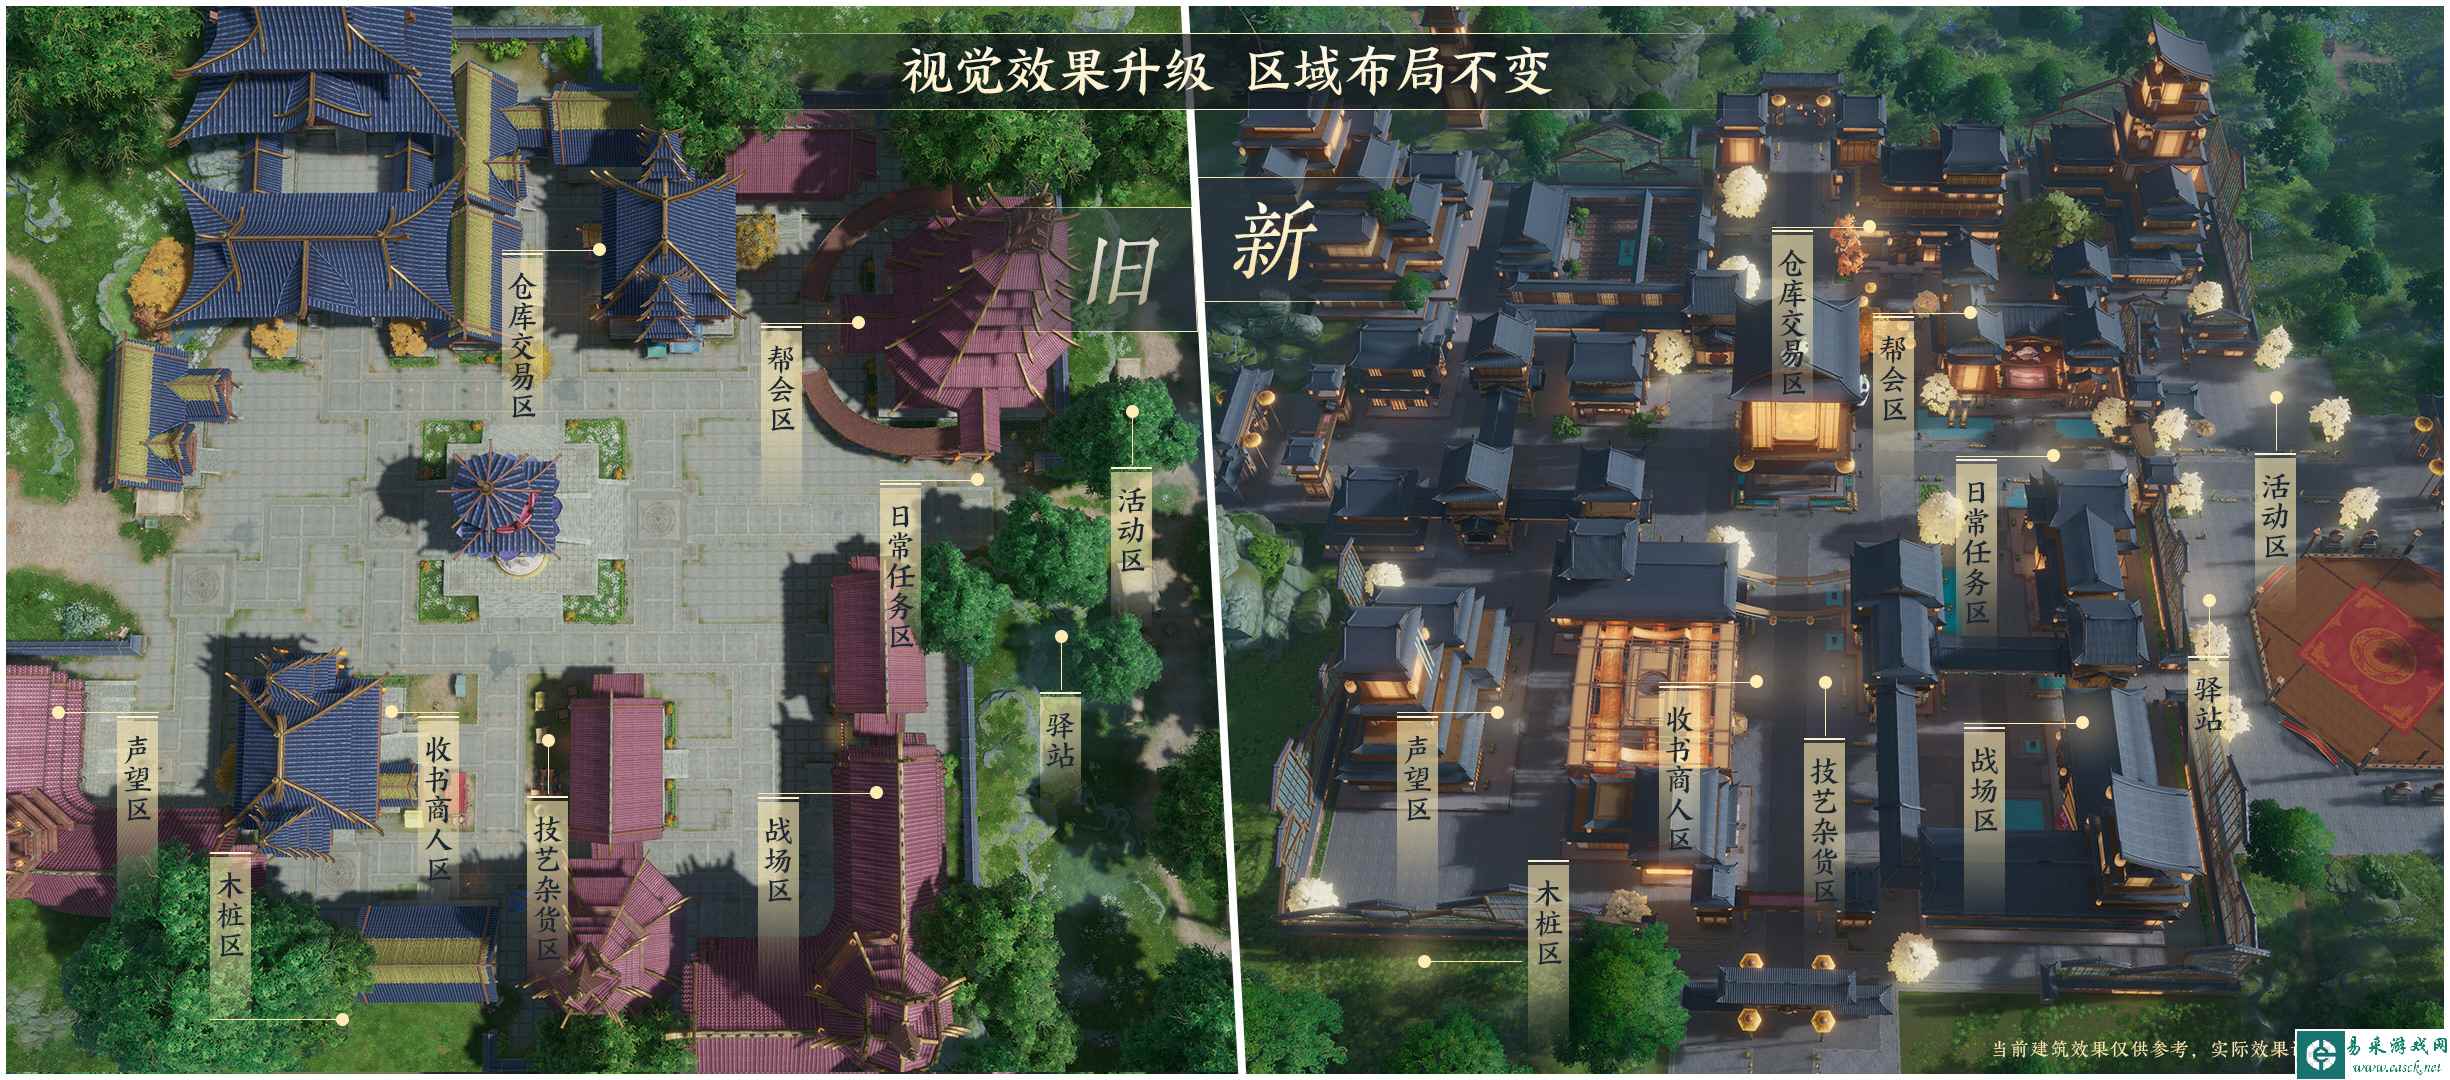 《剑网3》全新风格“广都镇”视觉效果升级